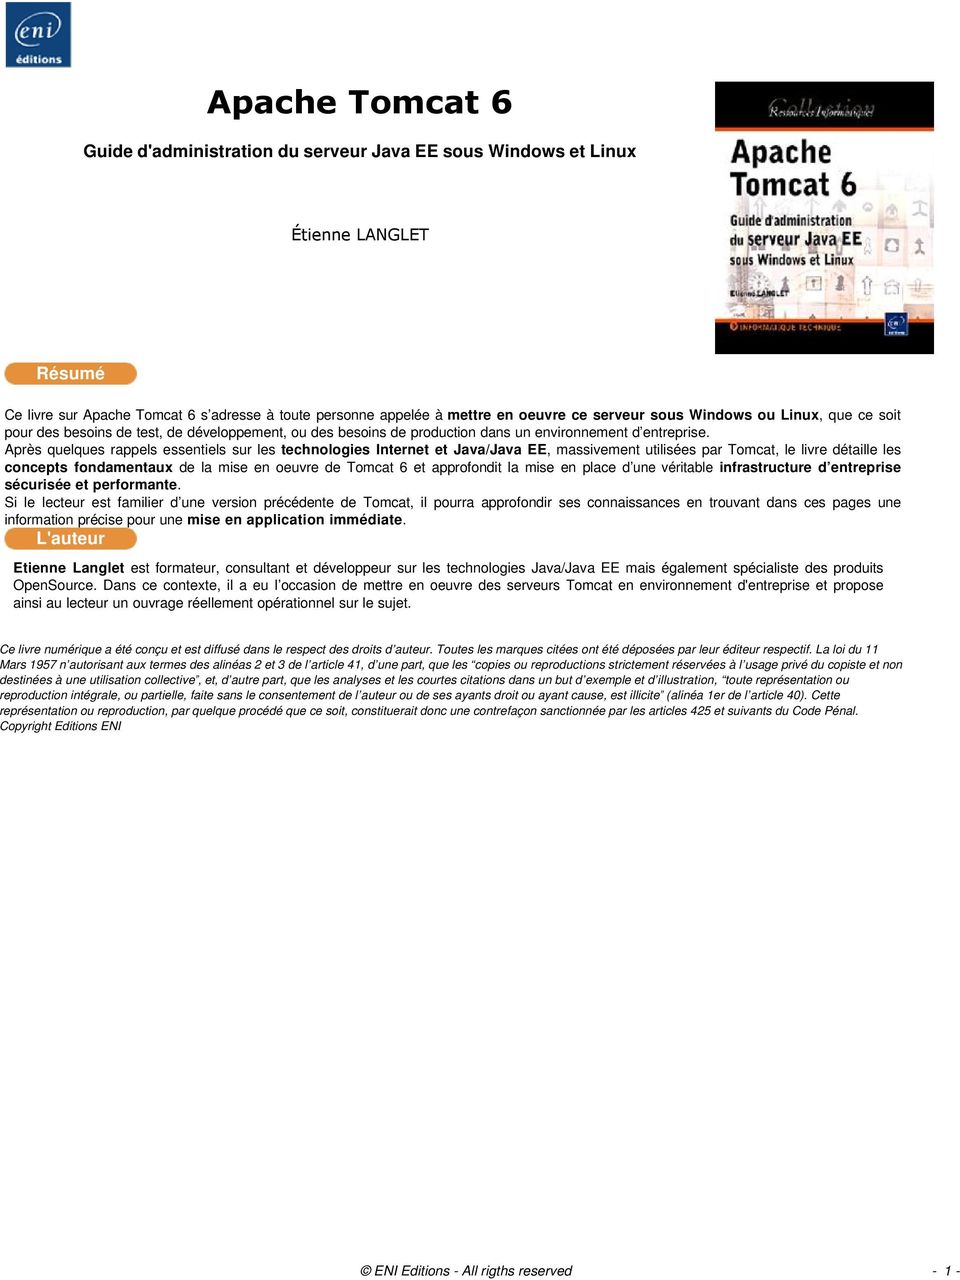 Après quelques rappels essentiels sur les technologies Internet et Java/Java EE, massivement utilisées par Tomcat, le livre détaille les concepts fondamentaux de la mise en oeuvre de Tomcat 6 et